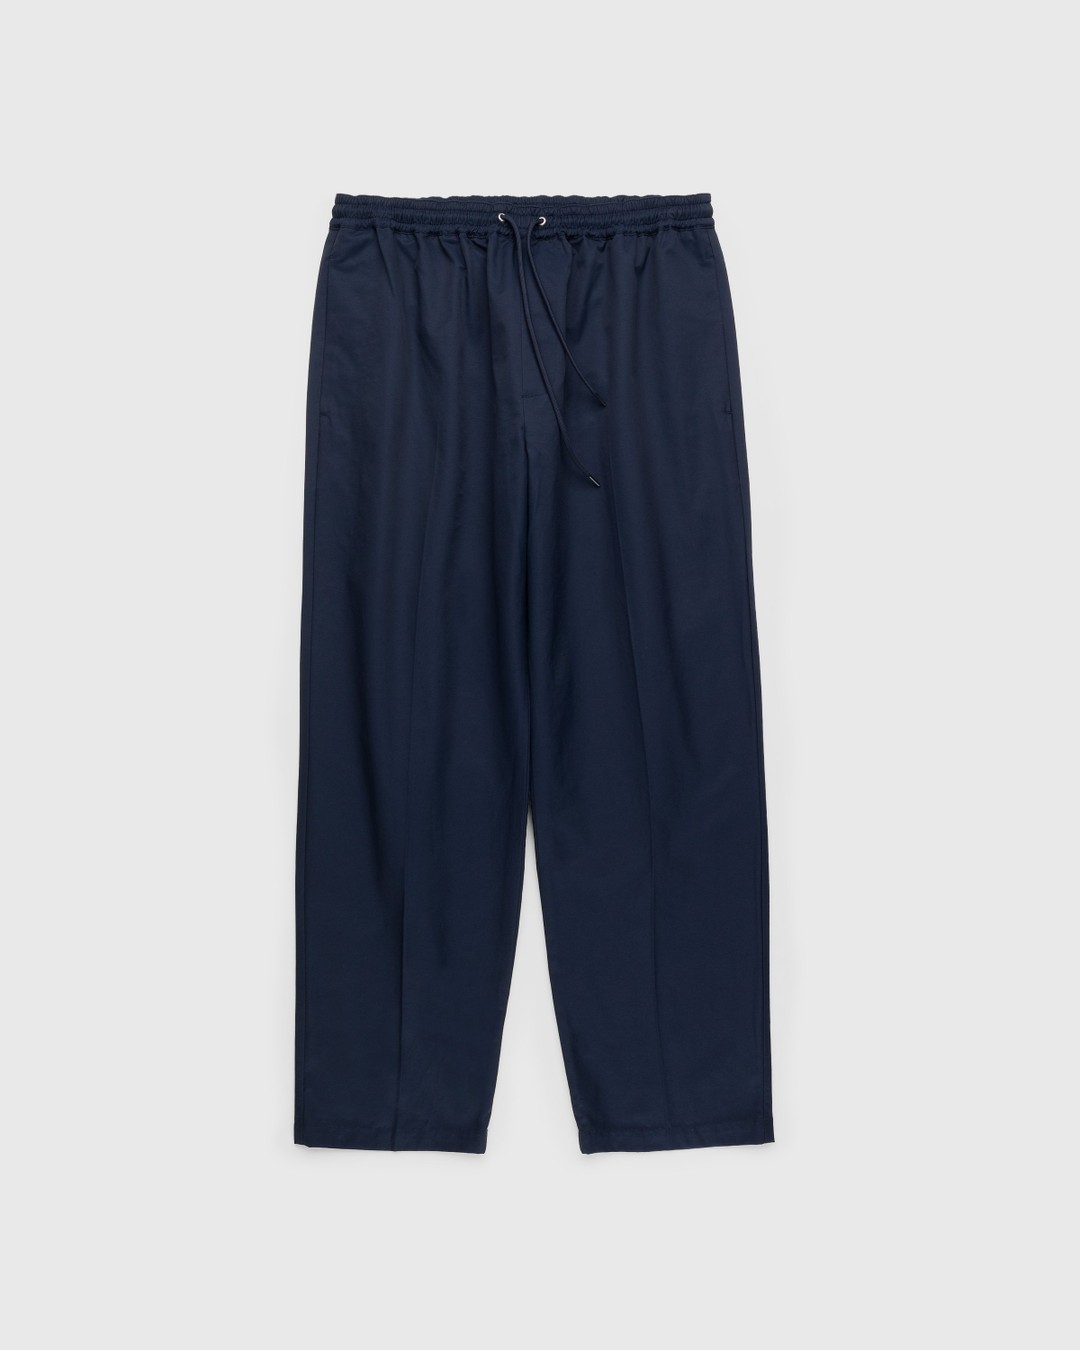 Highsnobiety – Cotton Nylon Elastic Pants Navy | Highsnobiety Shop